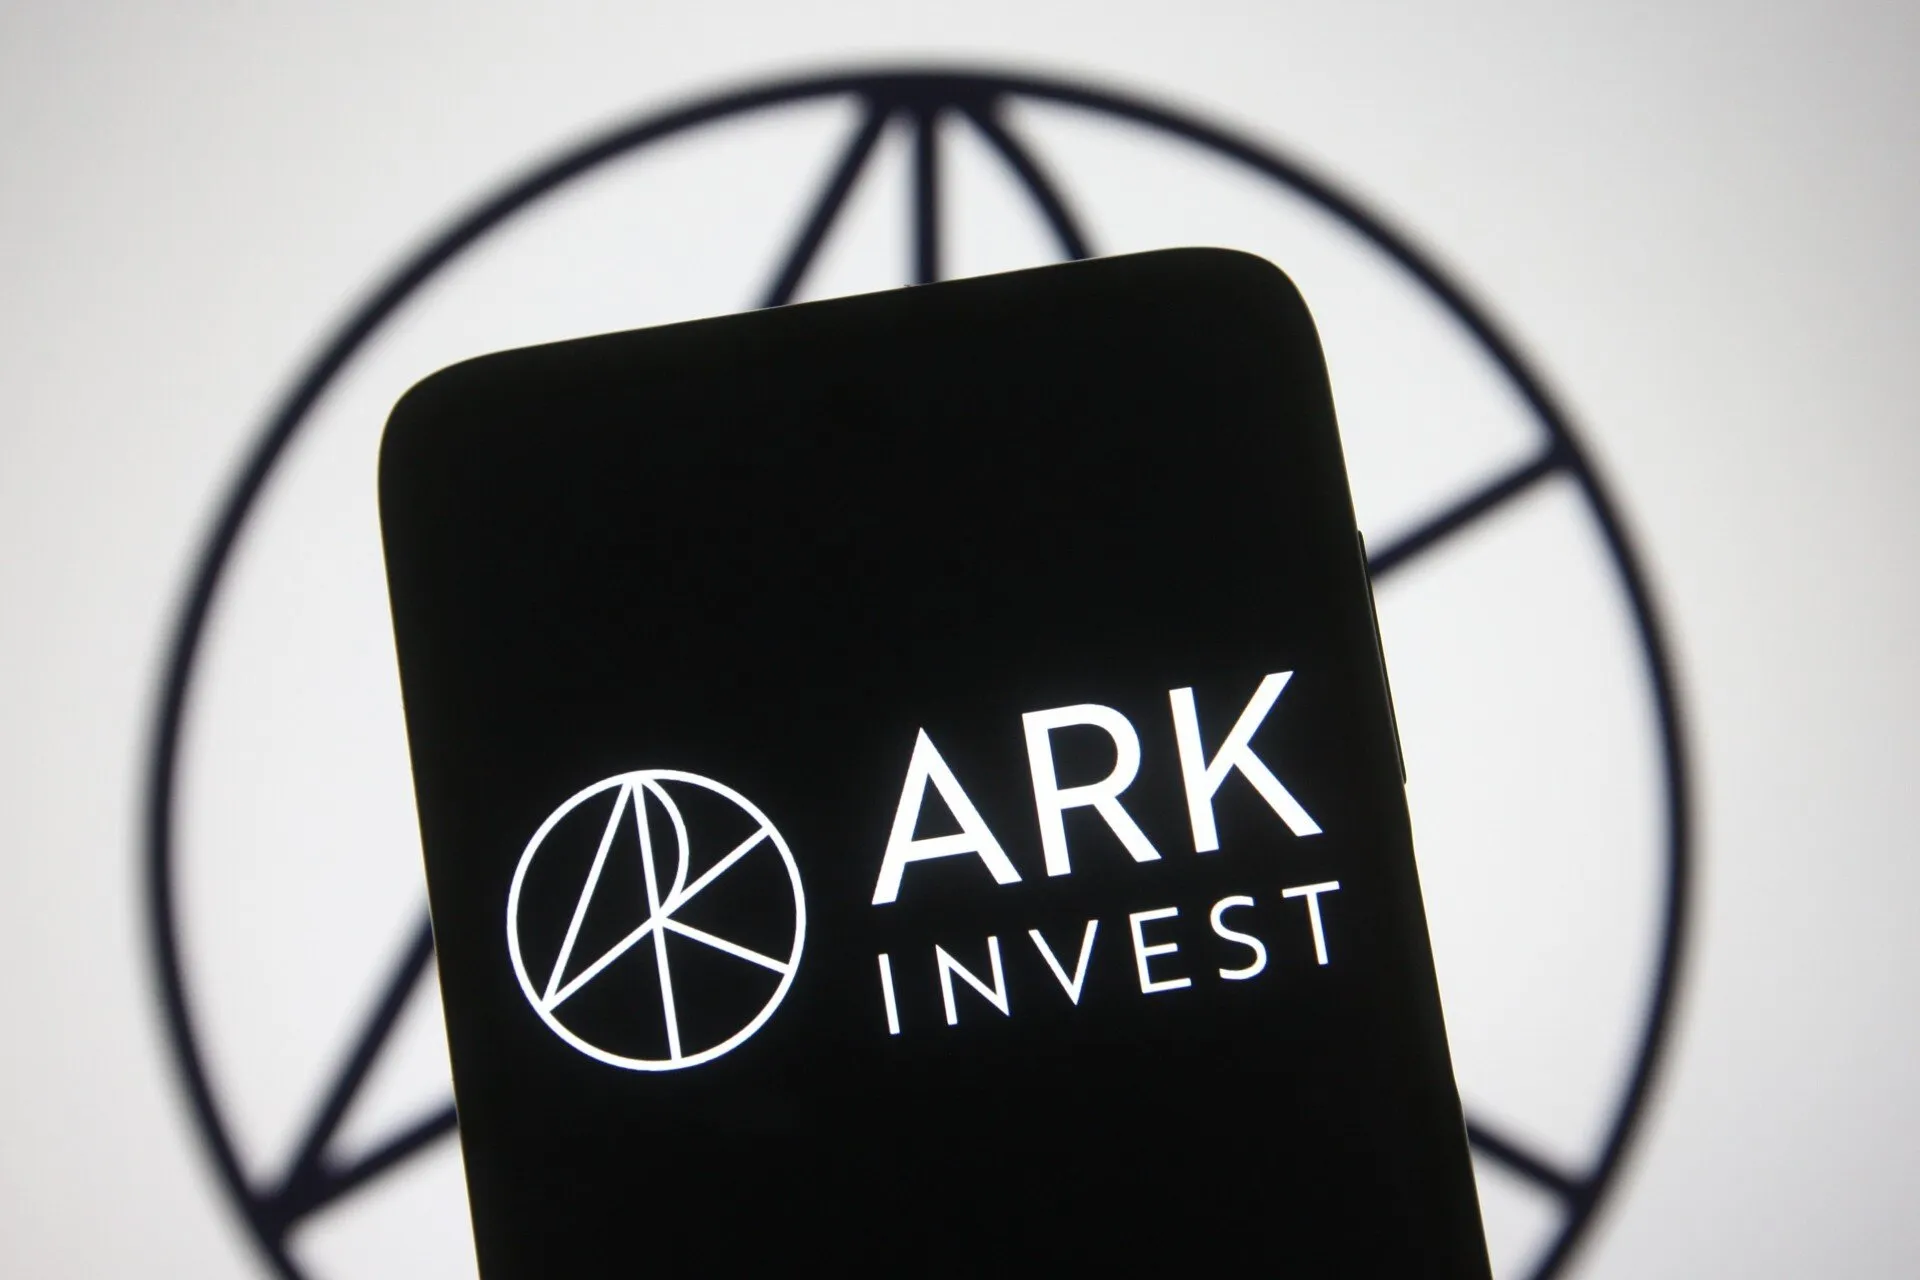 ARK se centra en las inversiones en innovación disruptiva. Imagen: Shutterstock.